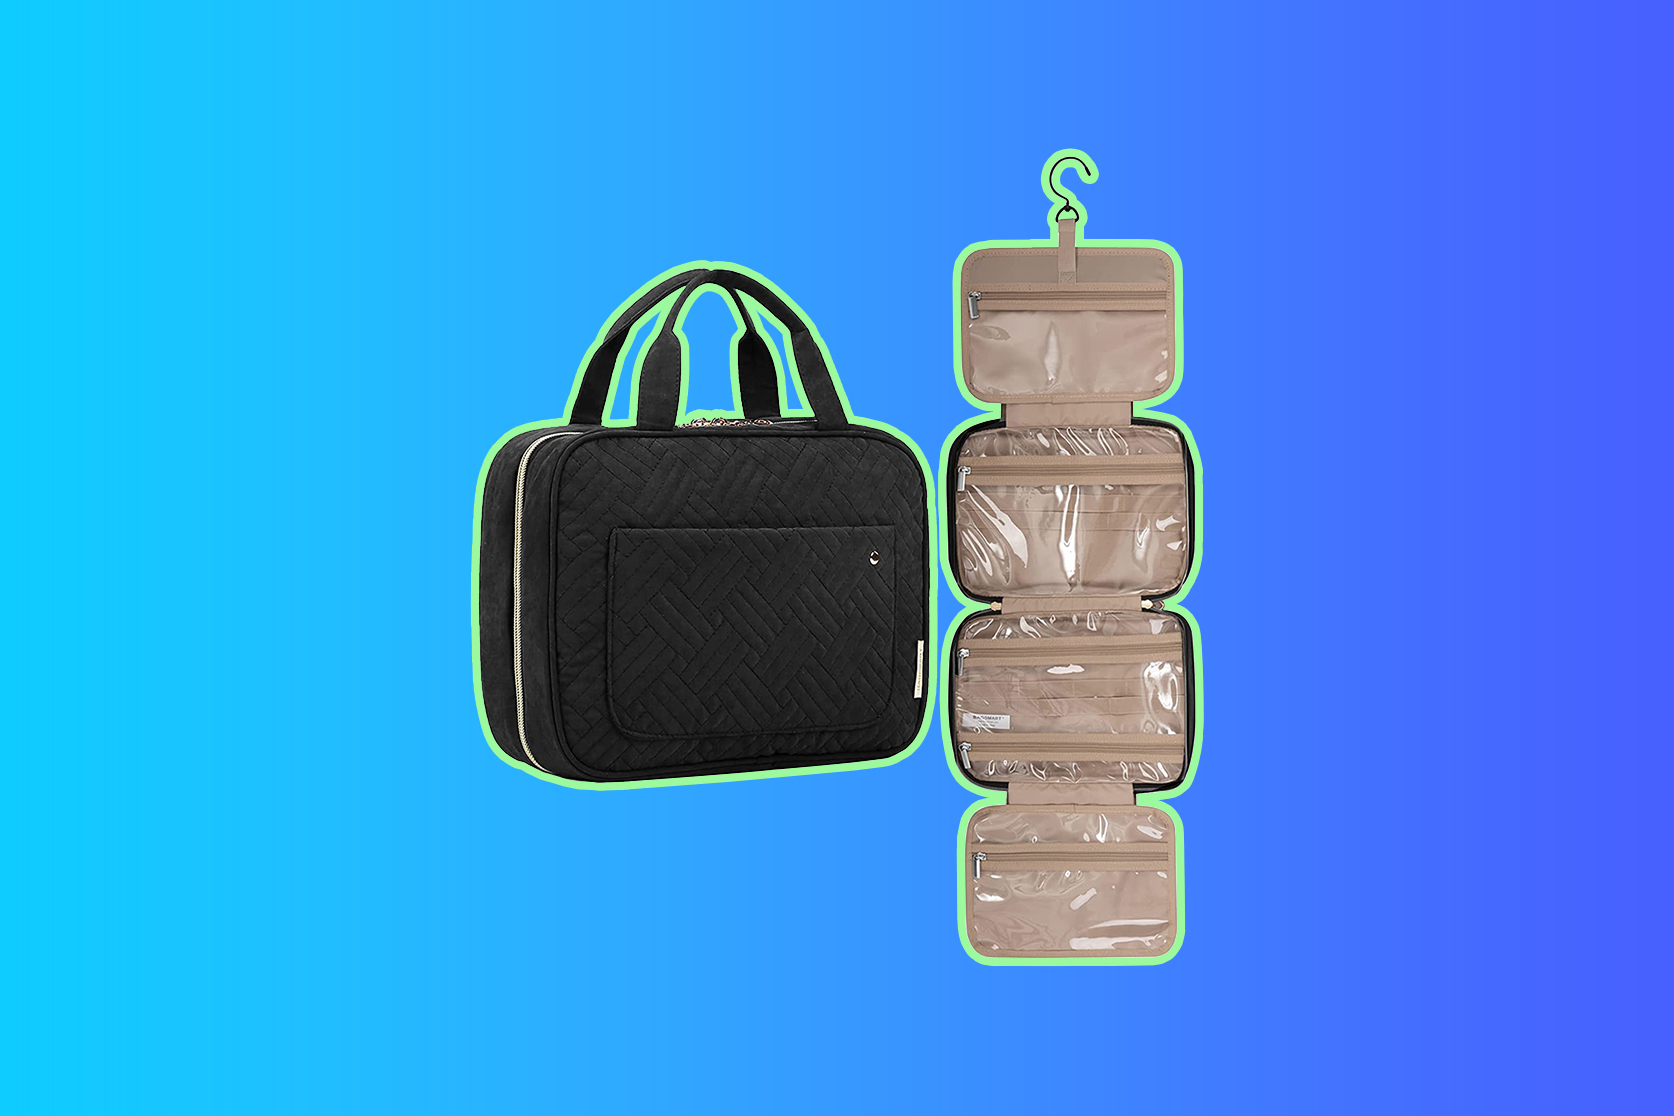 SpaceSaver Premium Vacuum Storage Bags (8 Pack) - Eat Travel